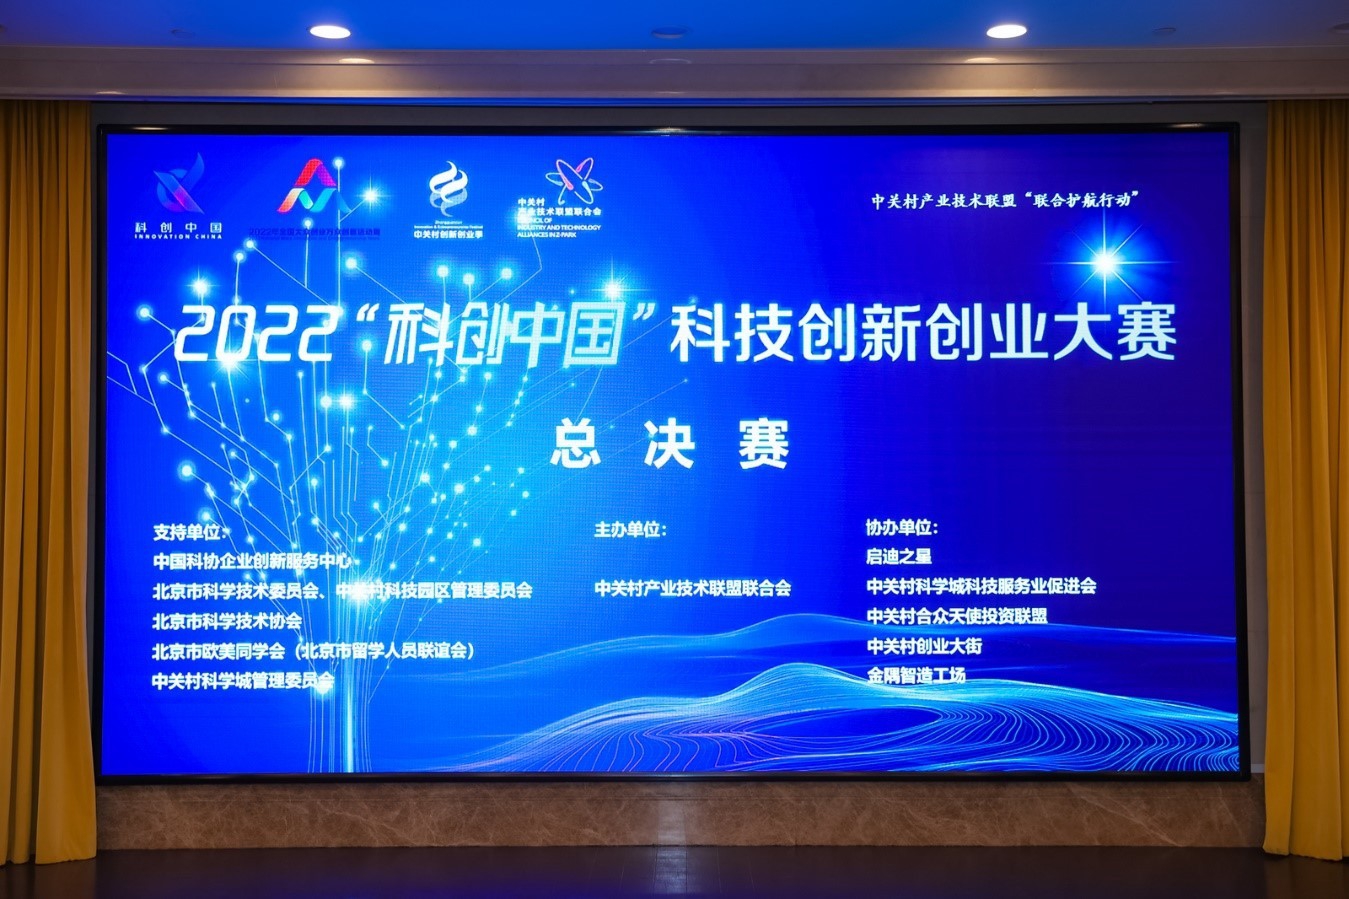 2022“科创中国”科技创新创业大